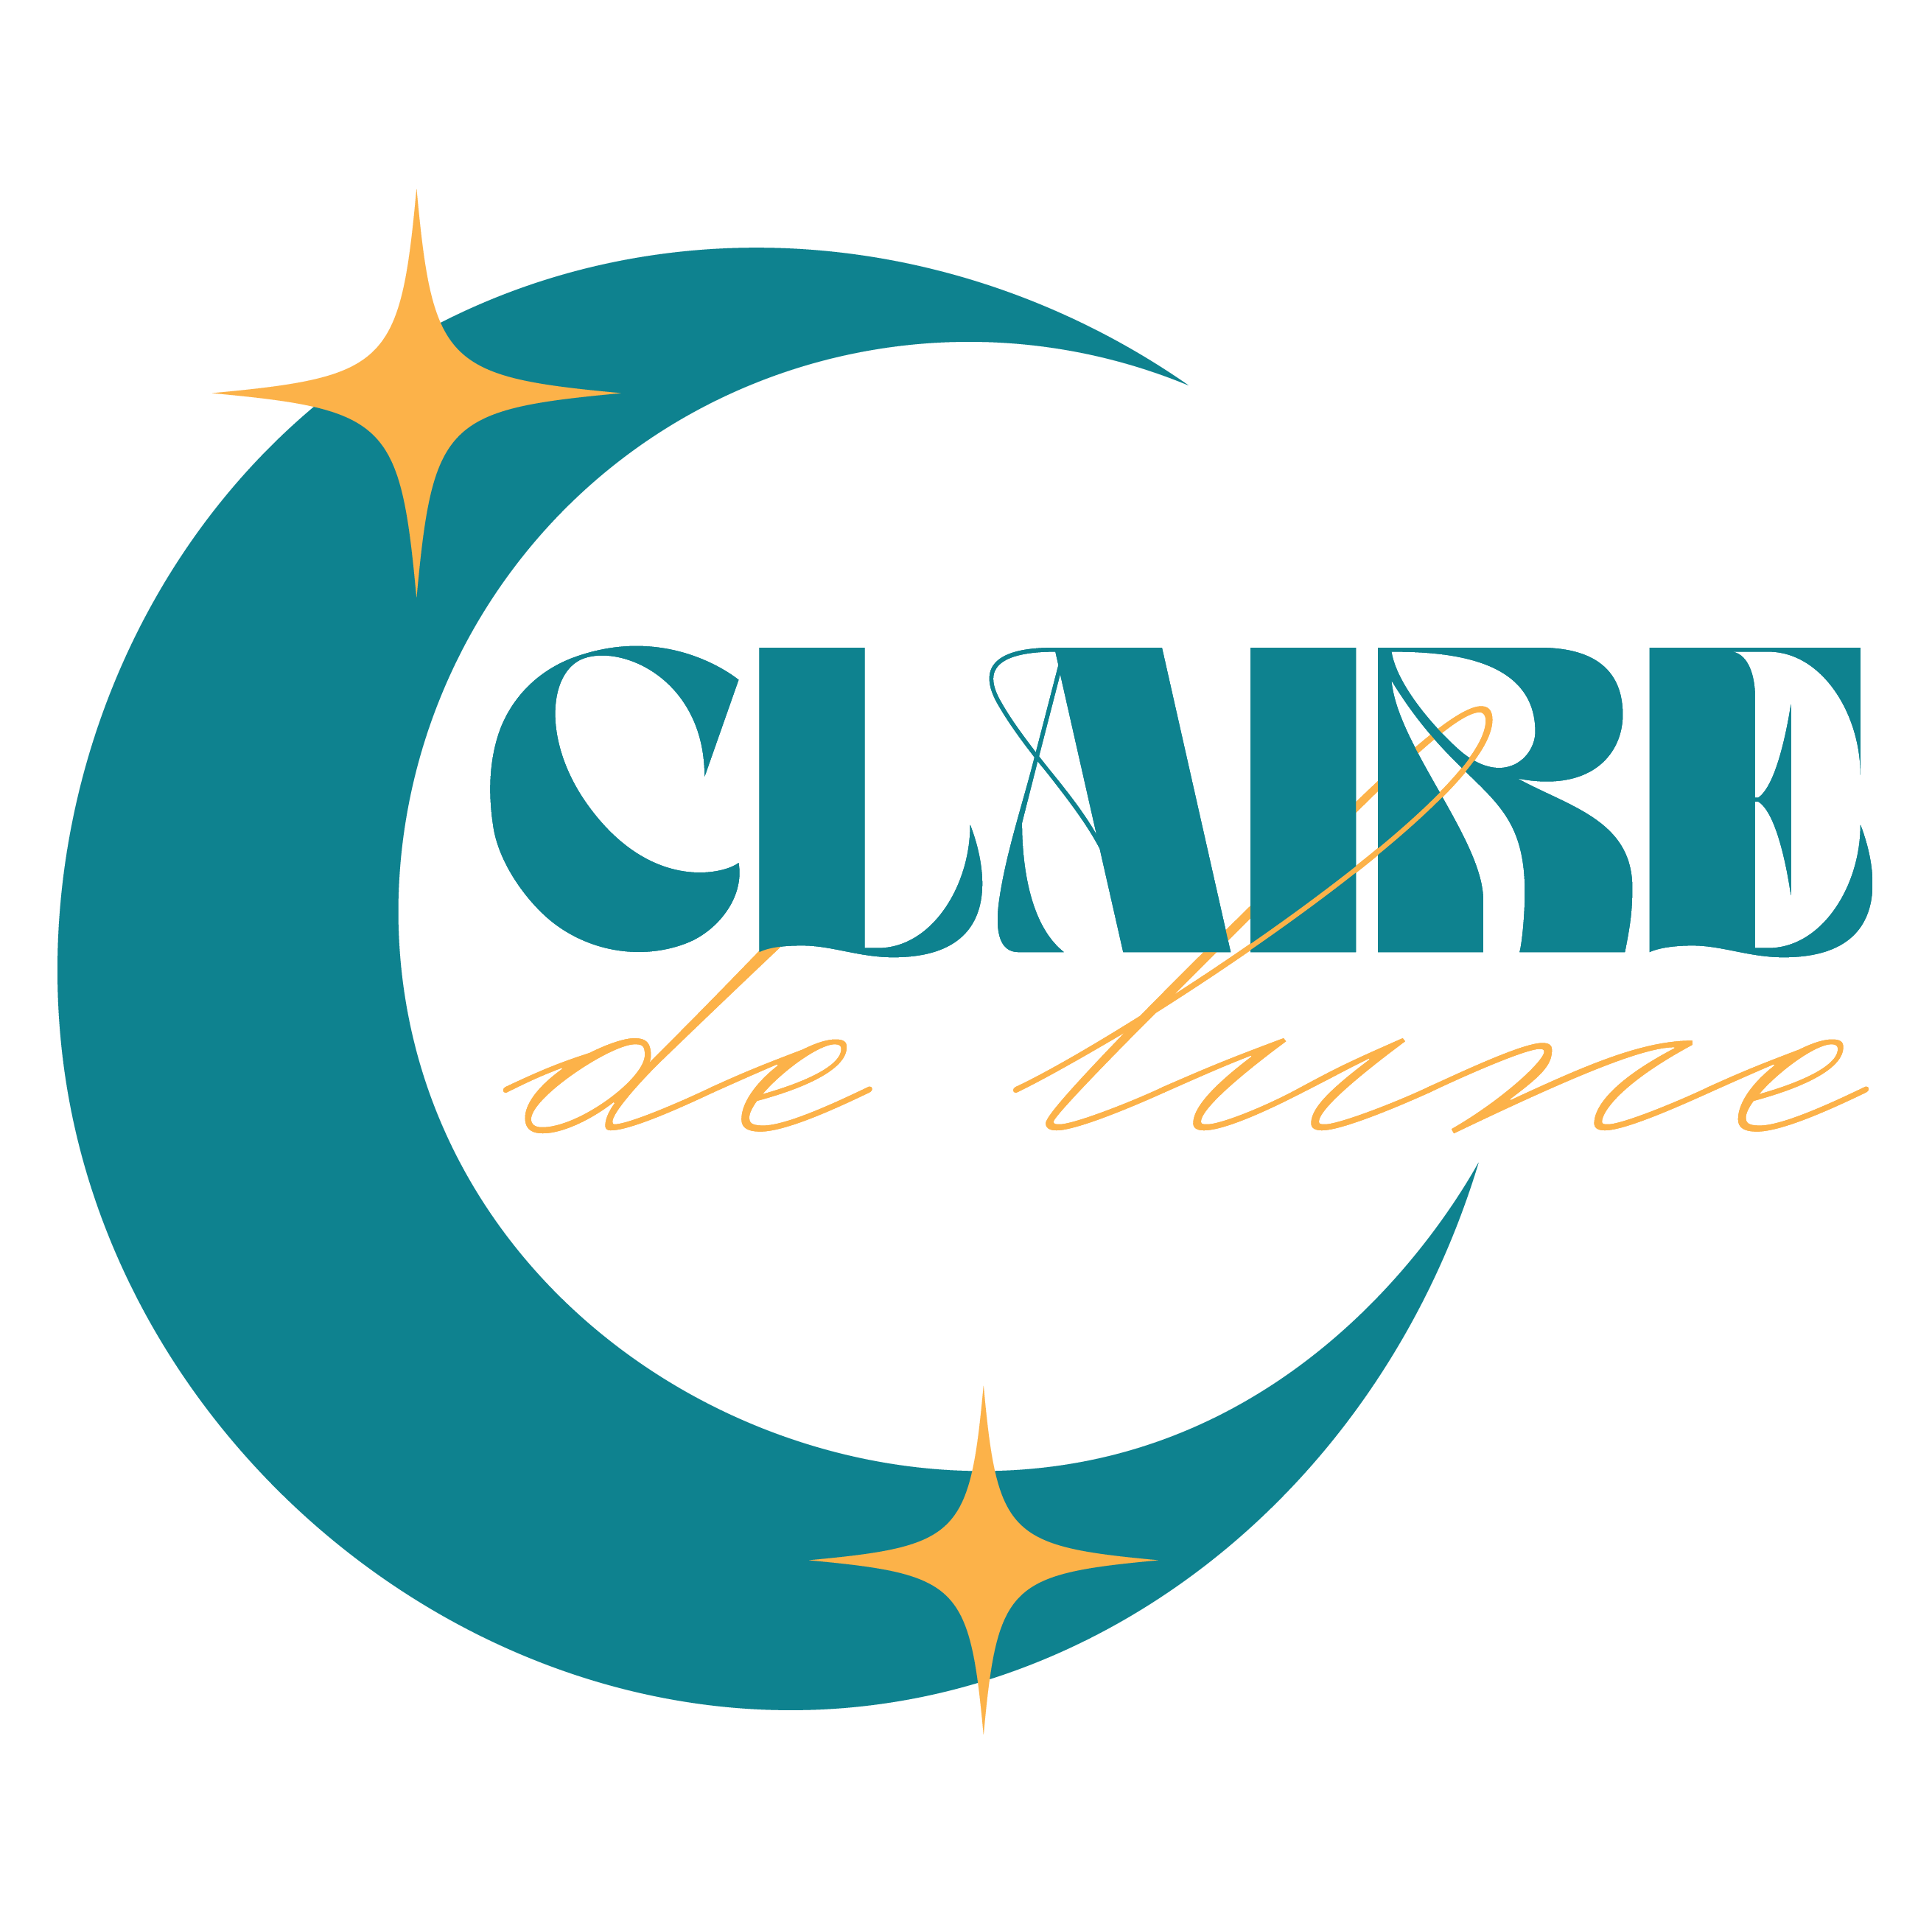 Claire Greene